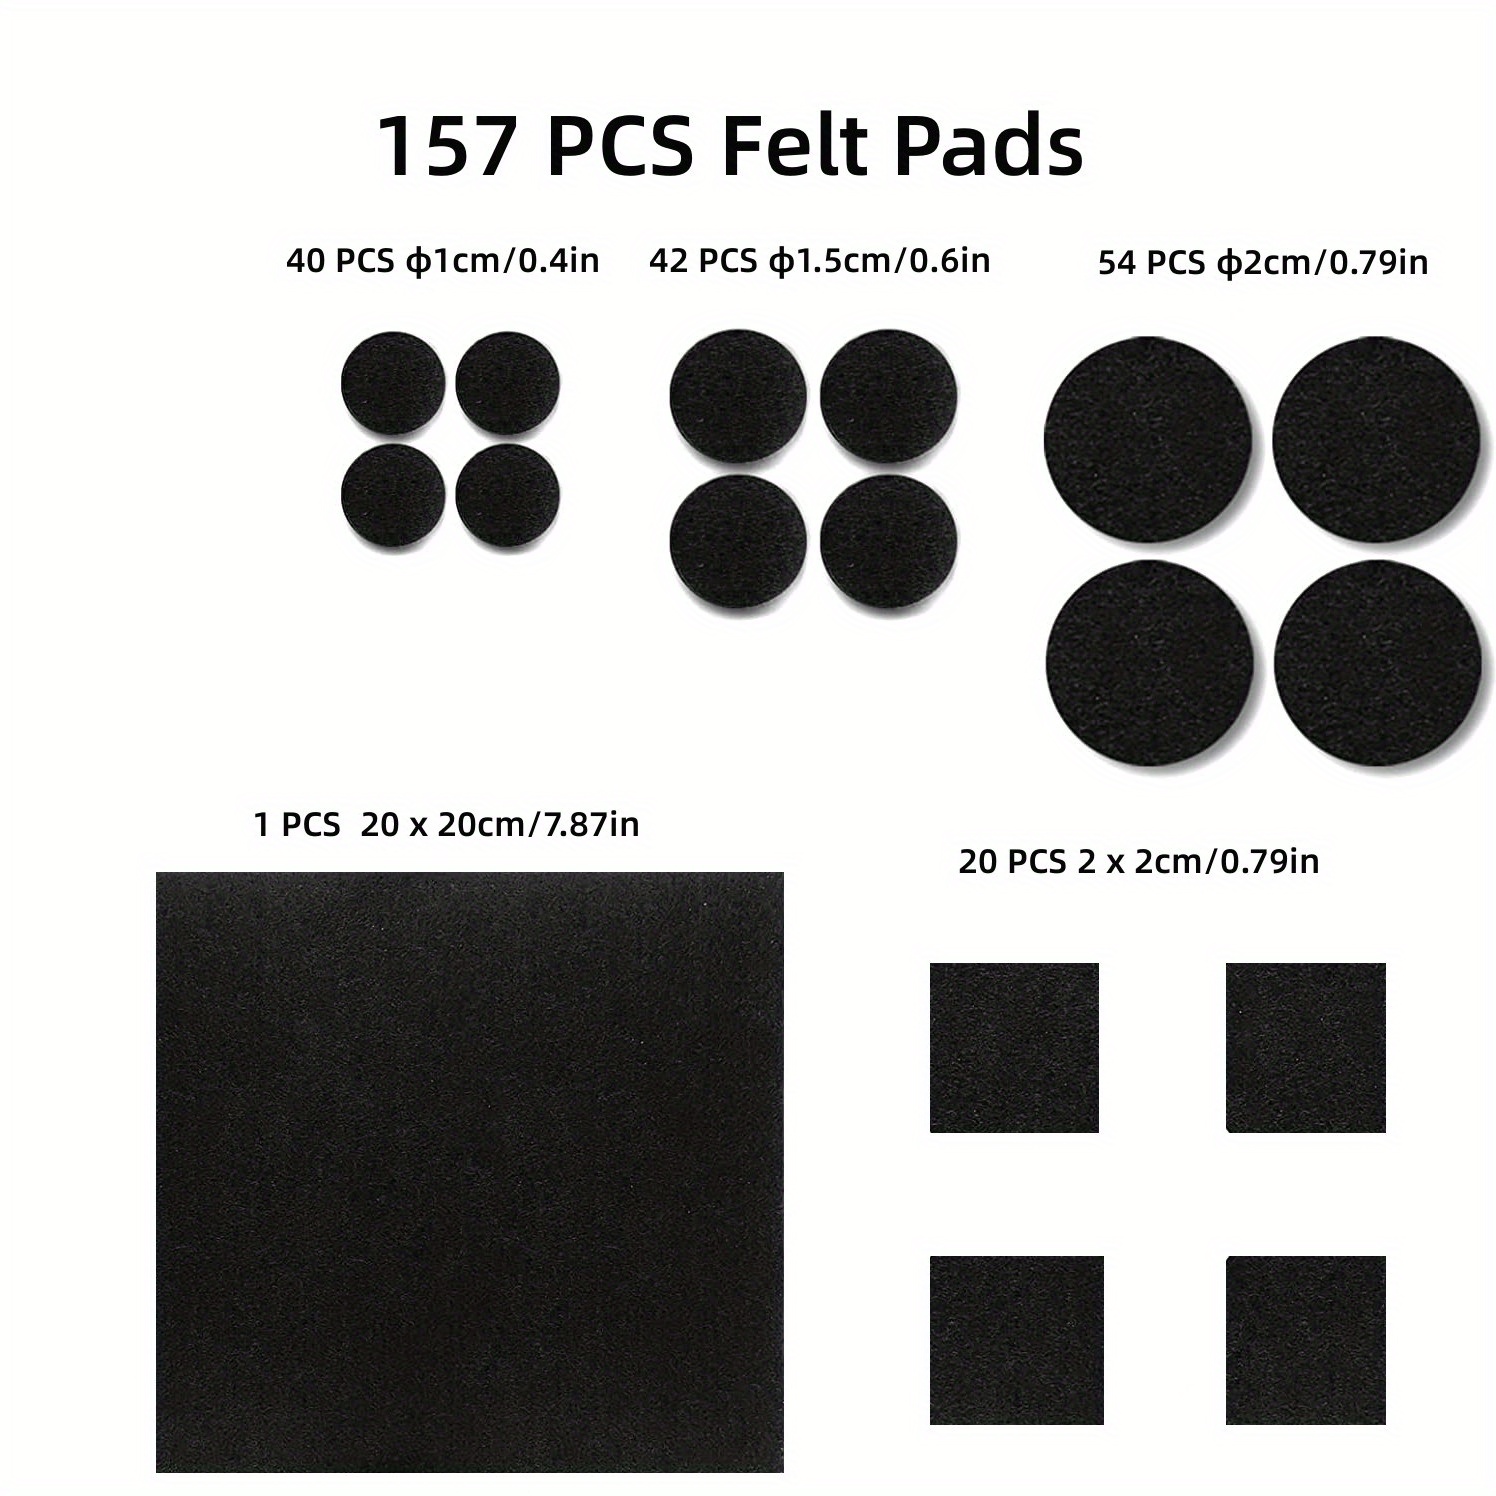 Felt Furniture Pads Self Adhesive -182 Pcs , Cuttable Anti Scratch